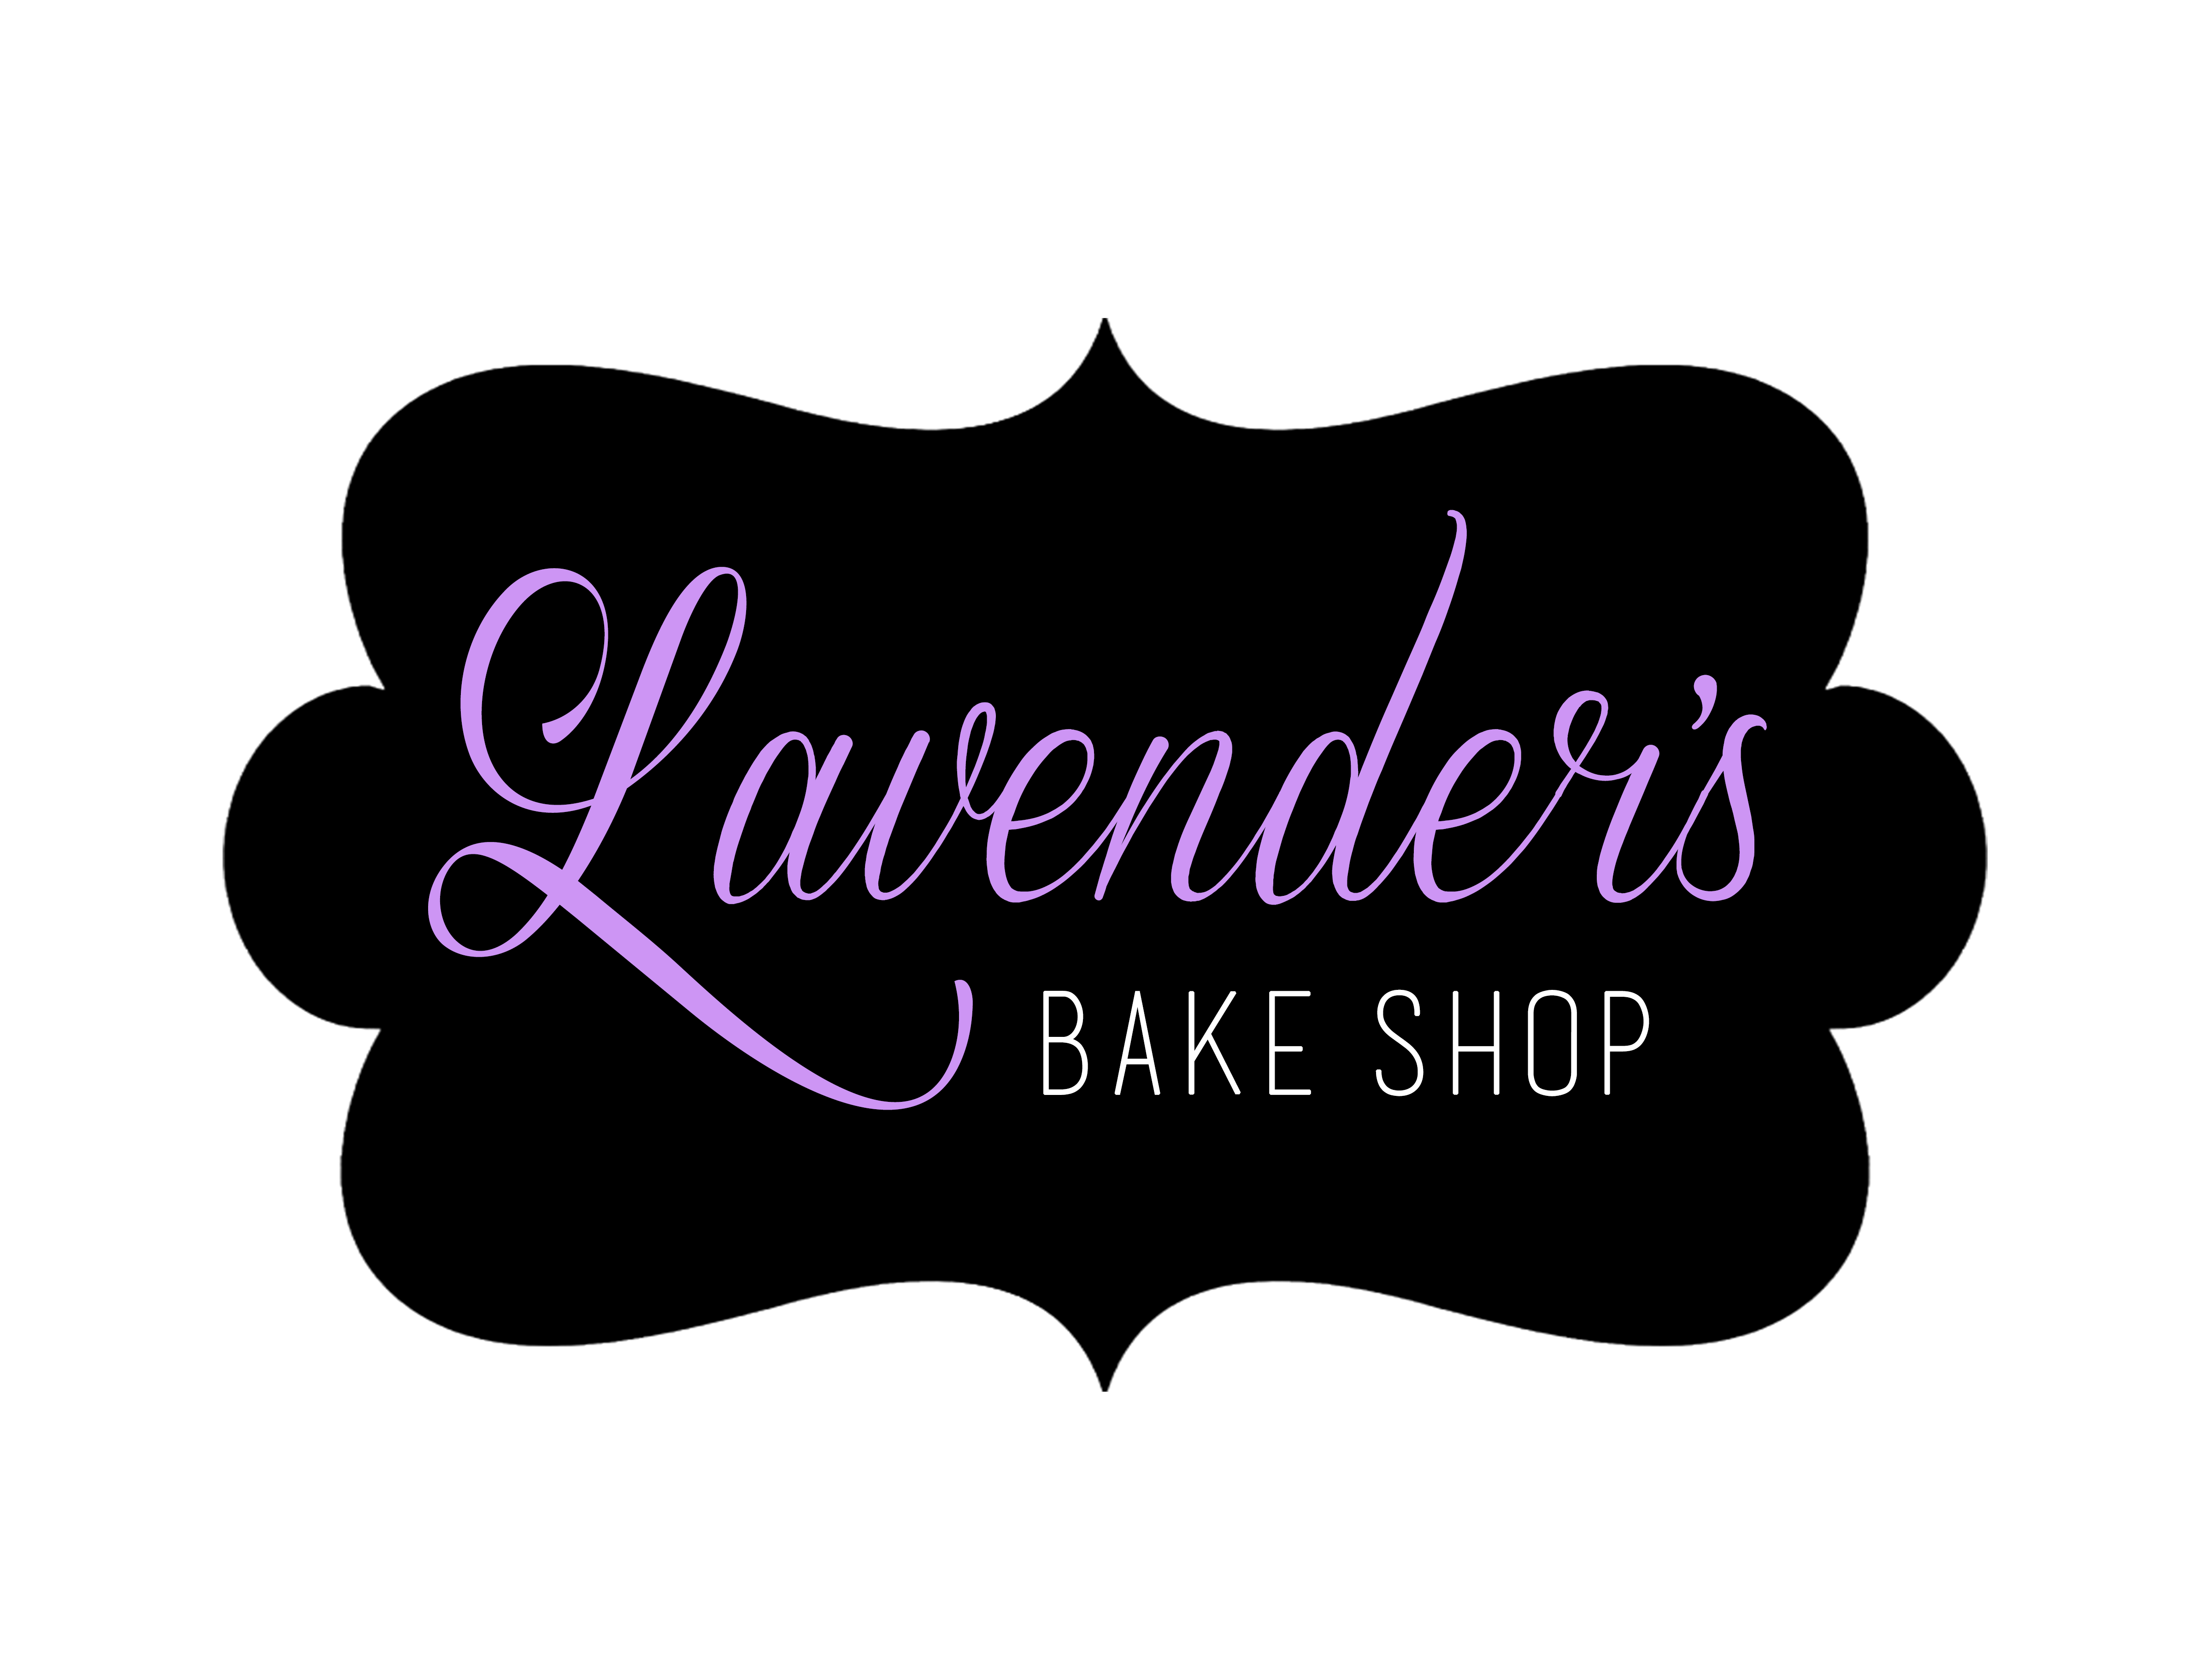 Lavender's Bake Shop